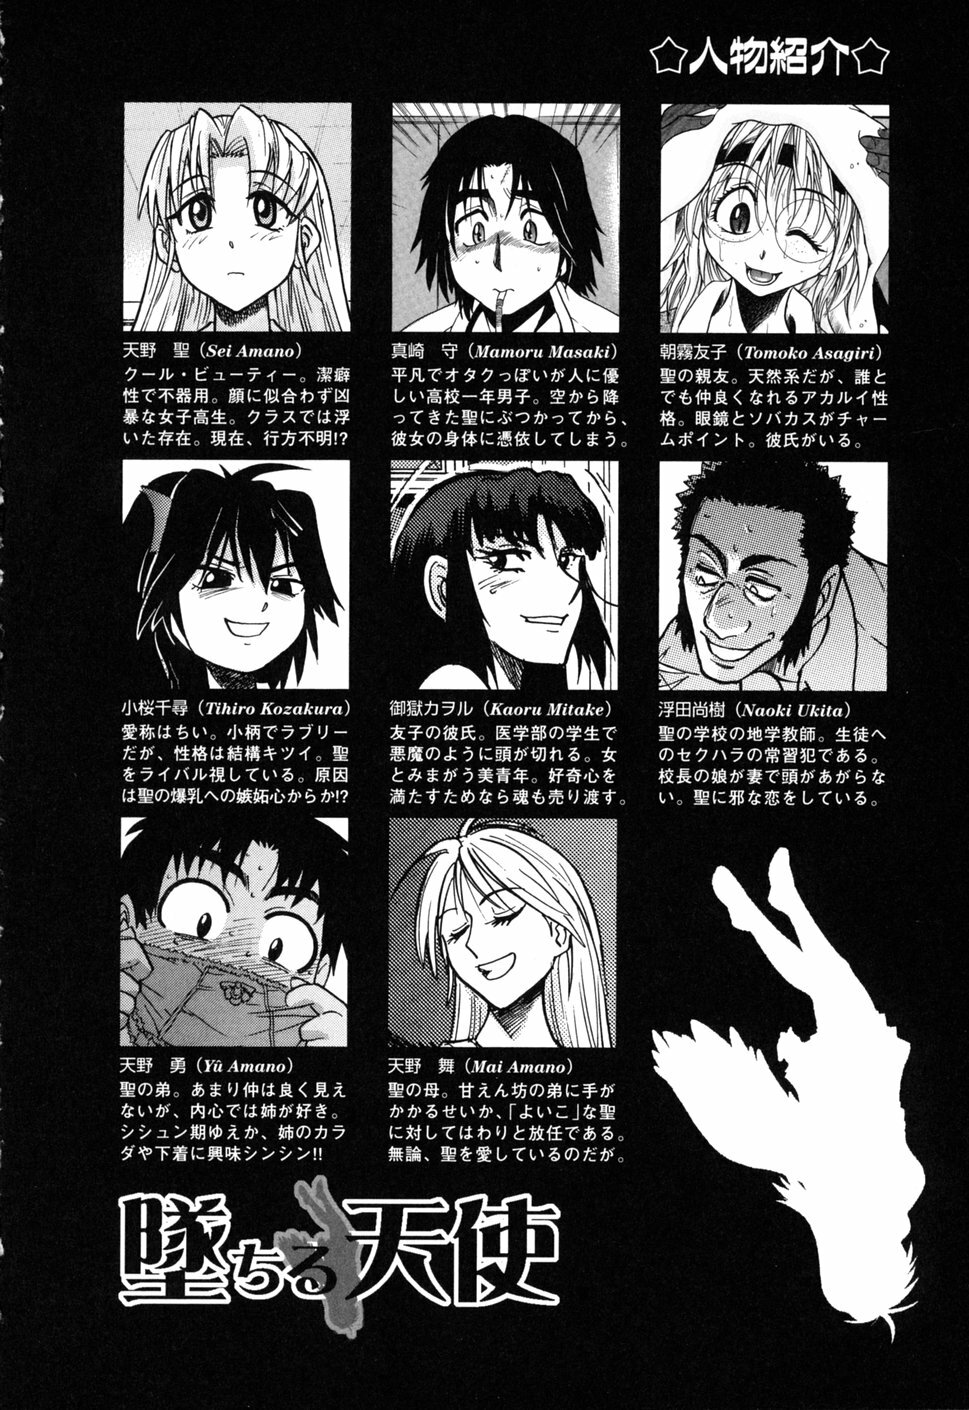 [DISTANCE] Ochiru Tenshi Vol. 1 page 6 full